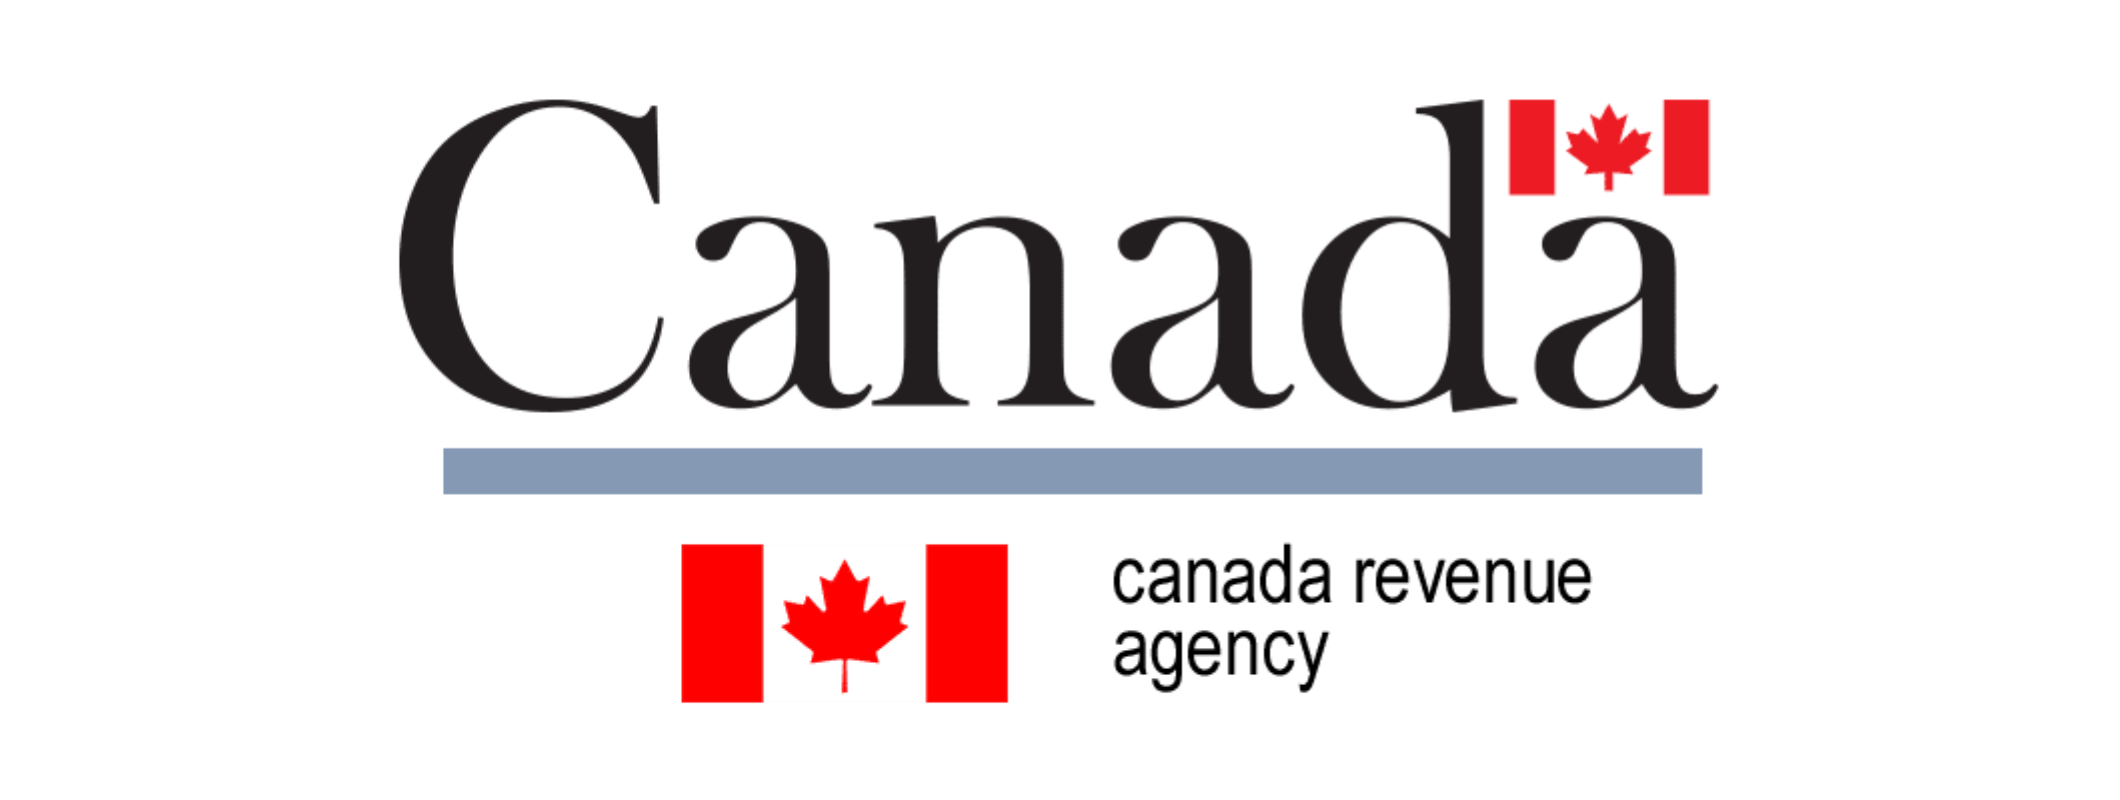 Canada Revenue Agency-1